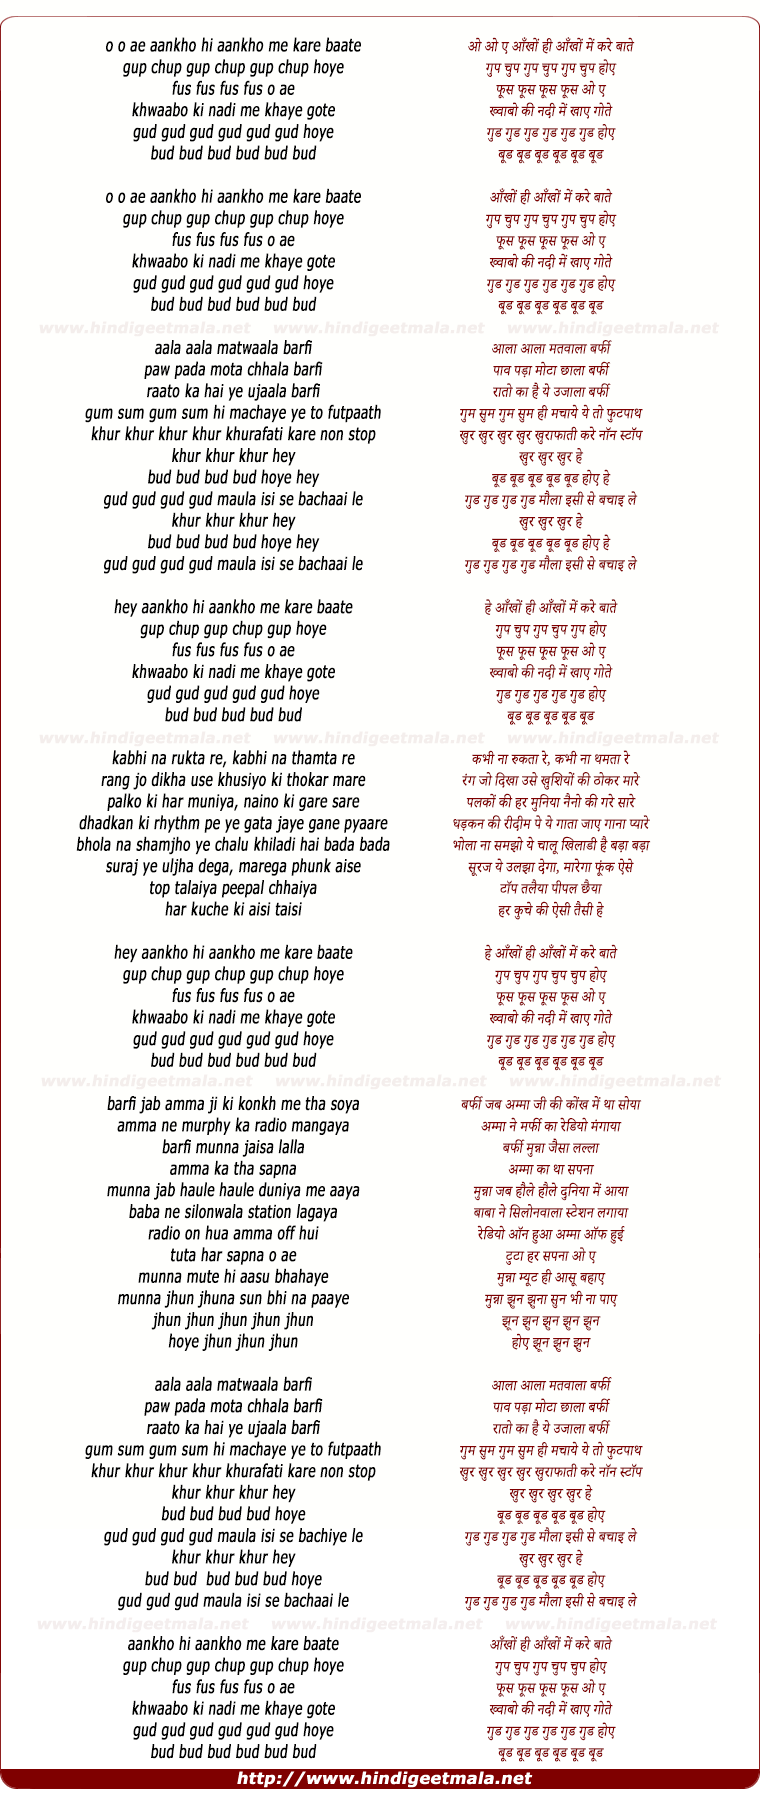 lyrics of song Aala Aala Matwaala Barfi